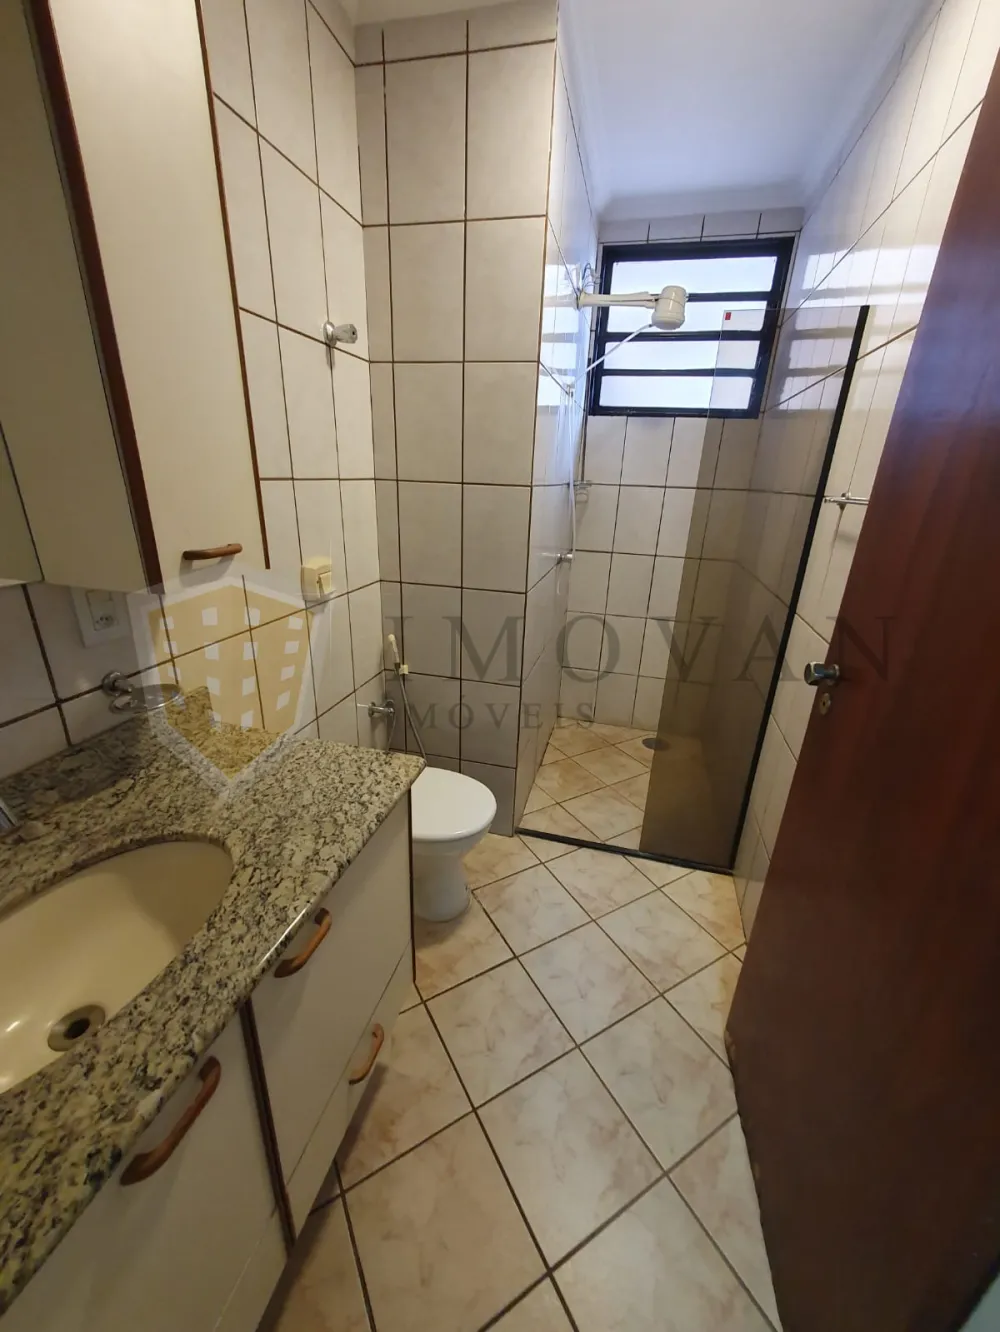 Comprar Apartamento / Padrão em Ribeirão Preto R$ 385.000,00 - Foto 11